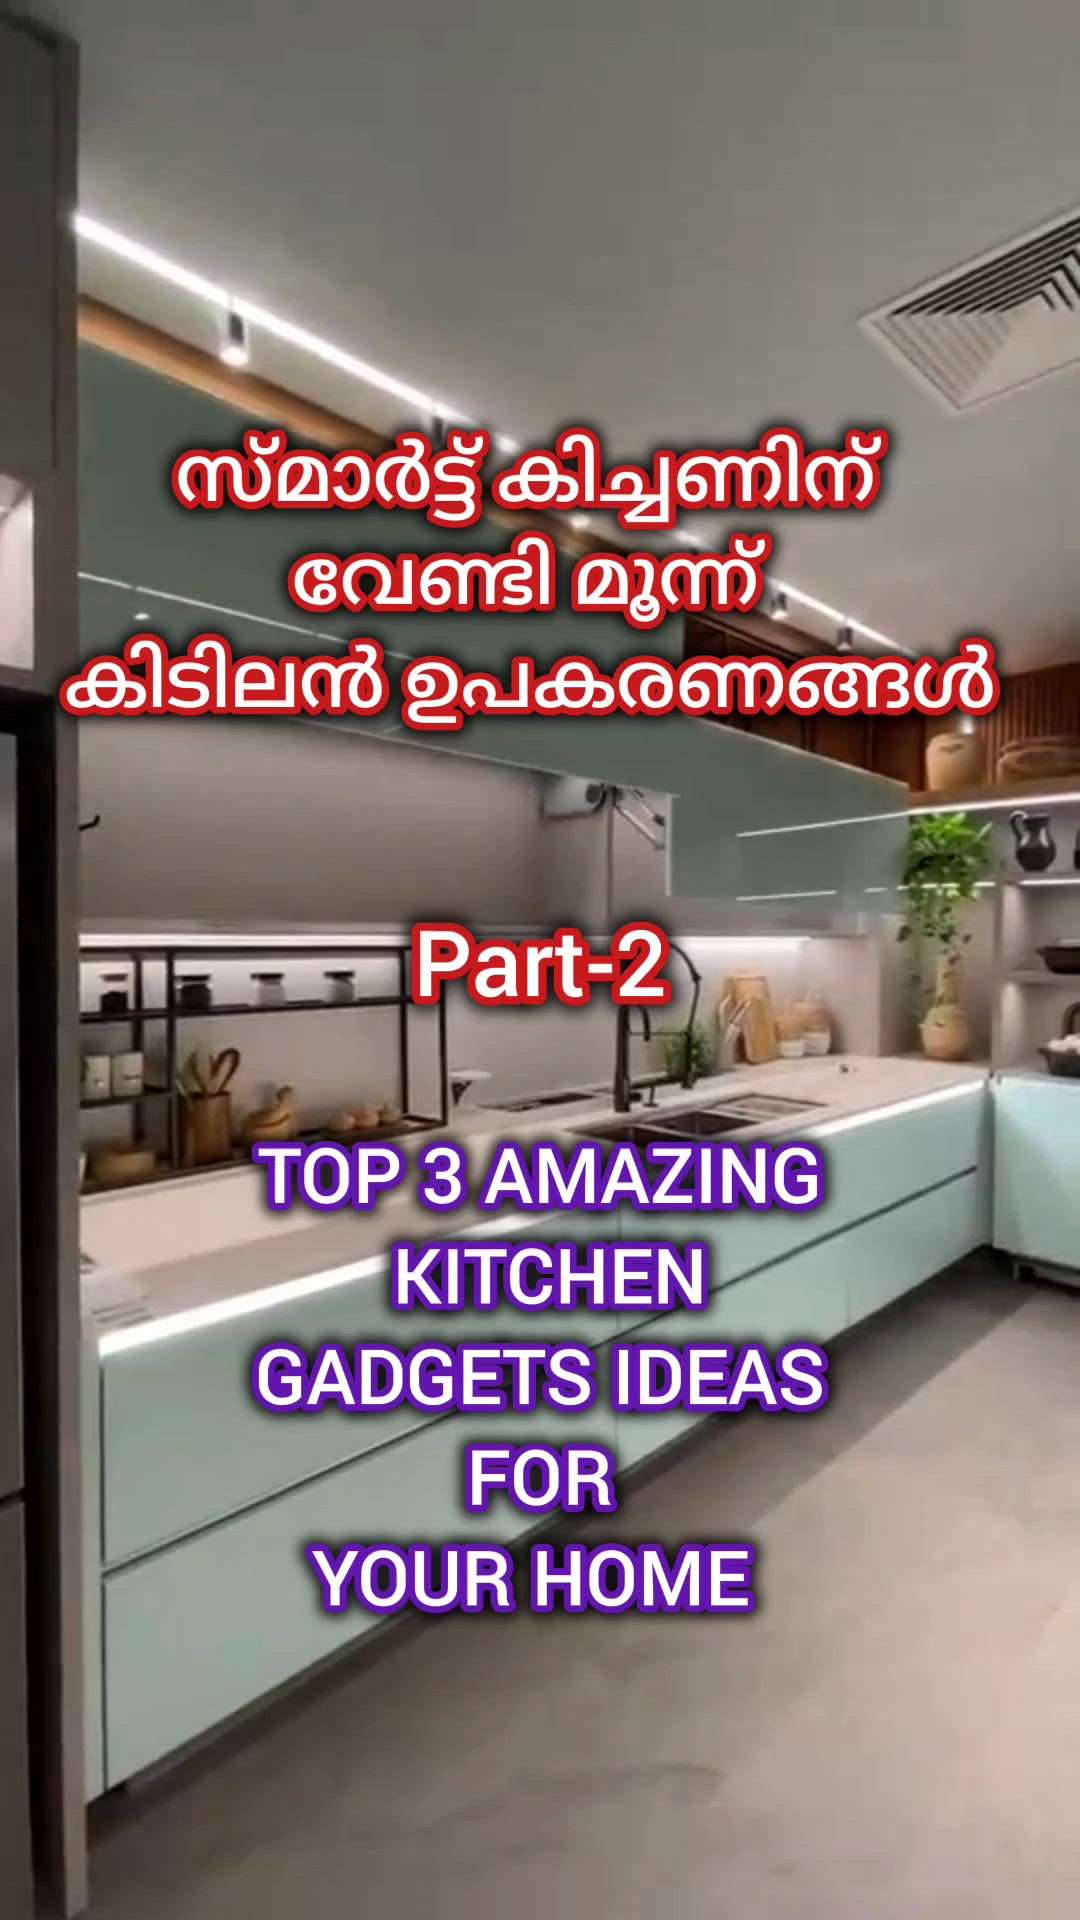 നിങ്ങളുടെ കിച്ചണിന് വേണ്ടി മൂന്നു അടിപൊളി ഉപകരണങ്ങൾ

top 3 kitchen gadgets idea for your modern kitchen

#Creatorsofkolo #top3 #kitchenideas #modernhome #ideas #kitchen